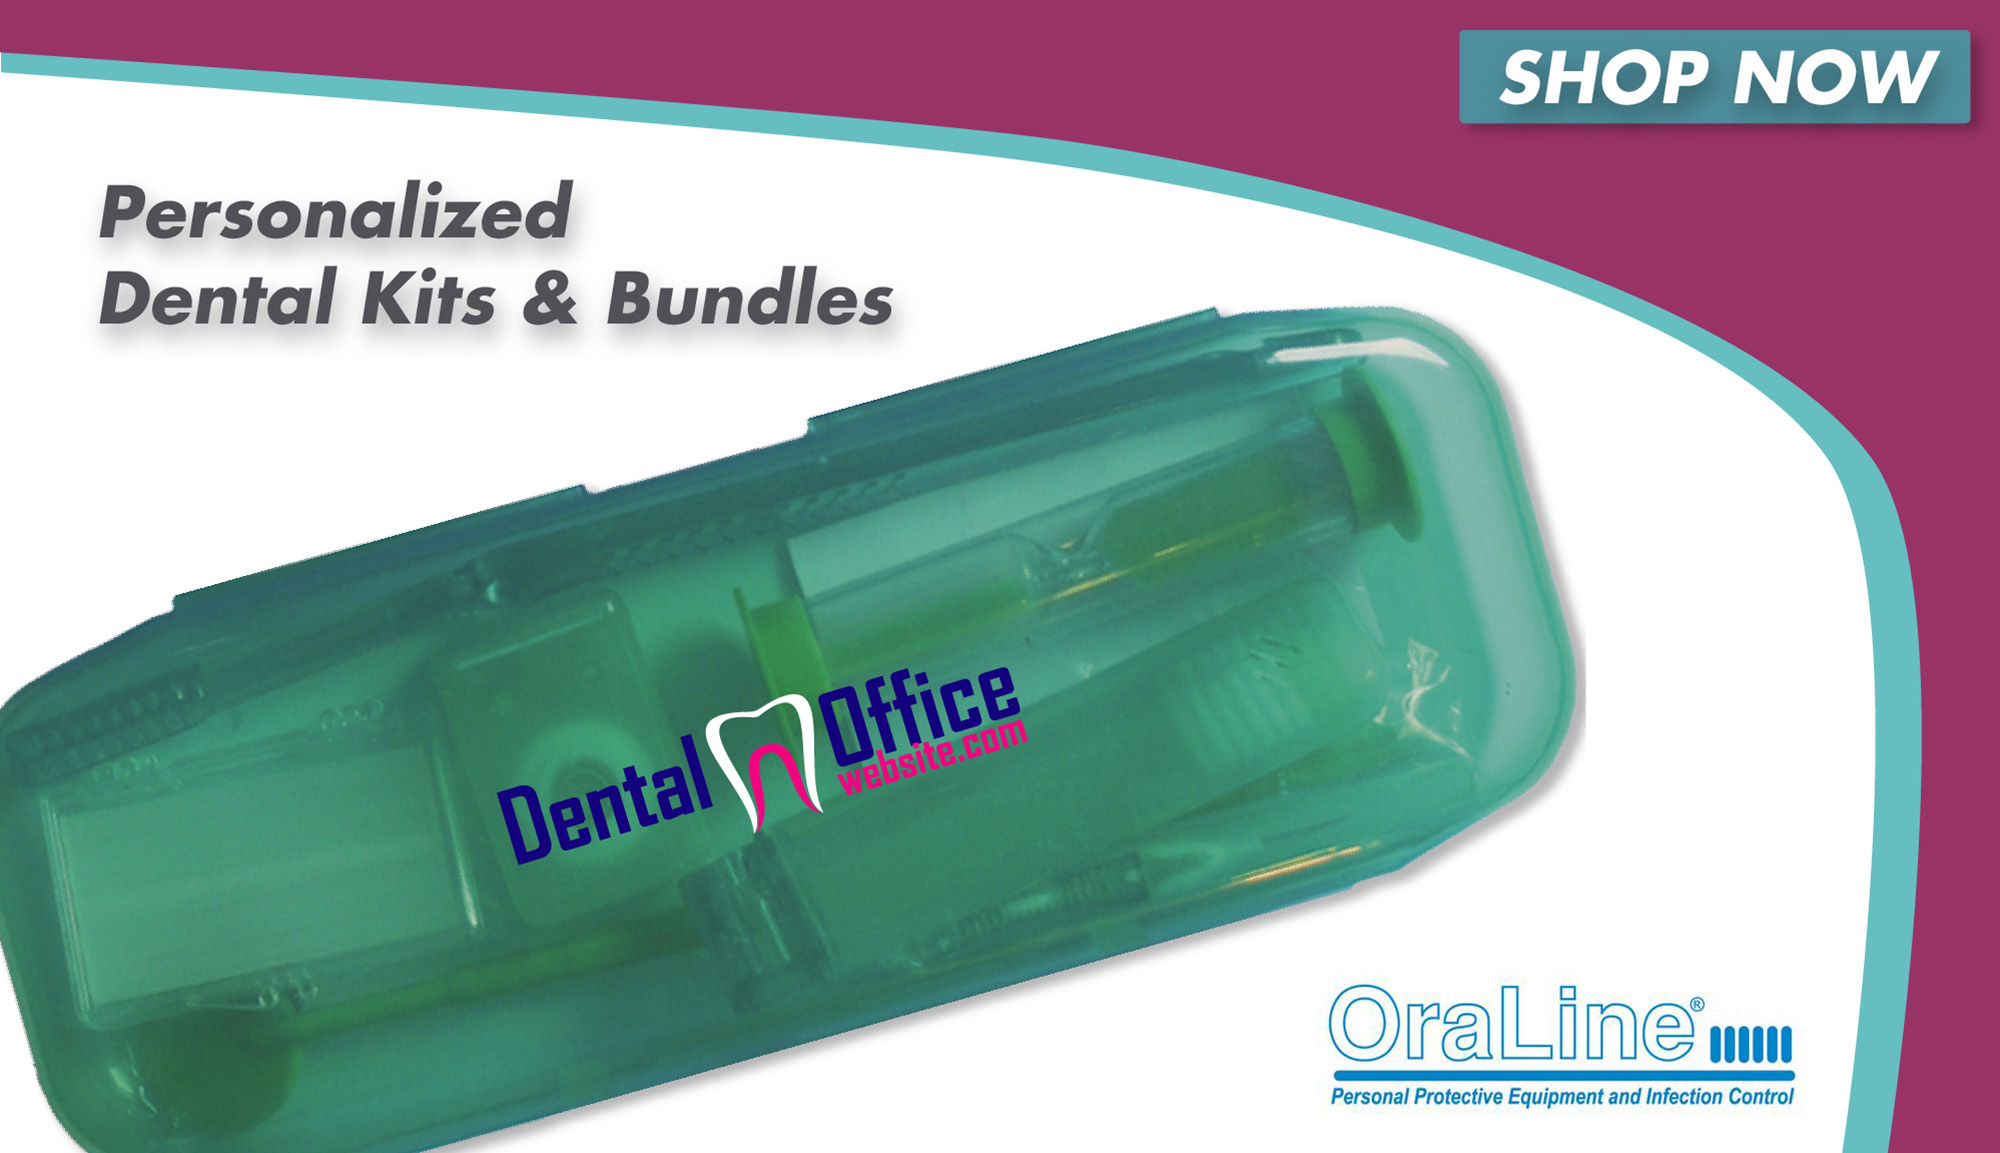 Personalized Dental Kits & Bundles